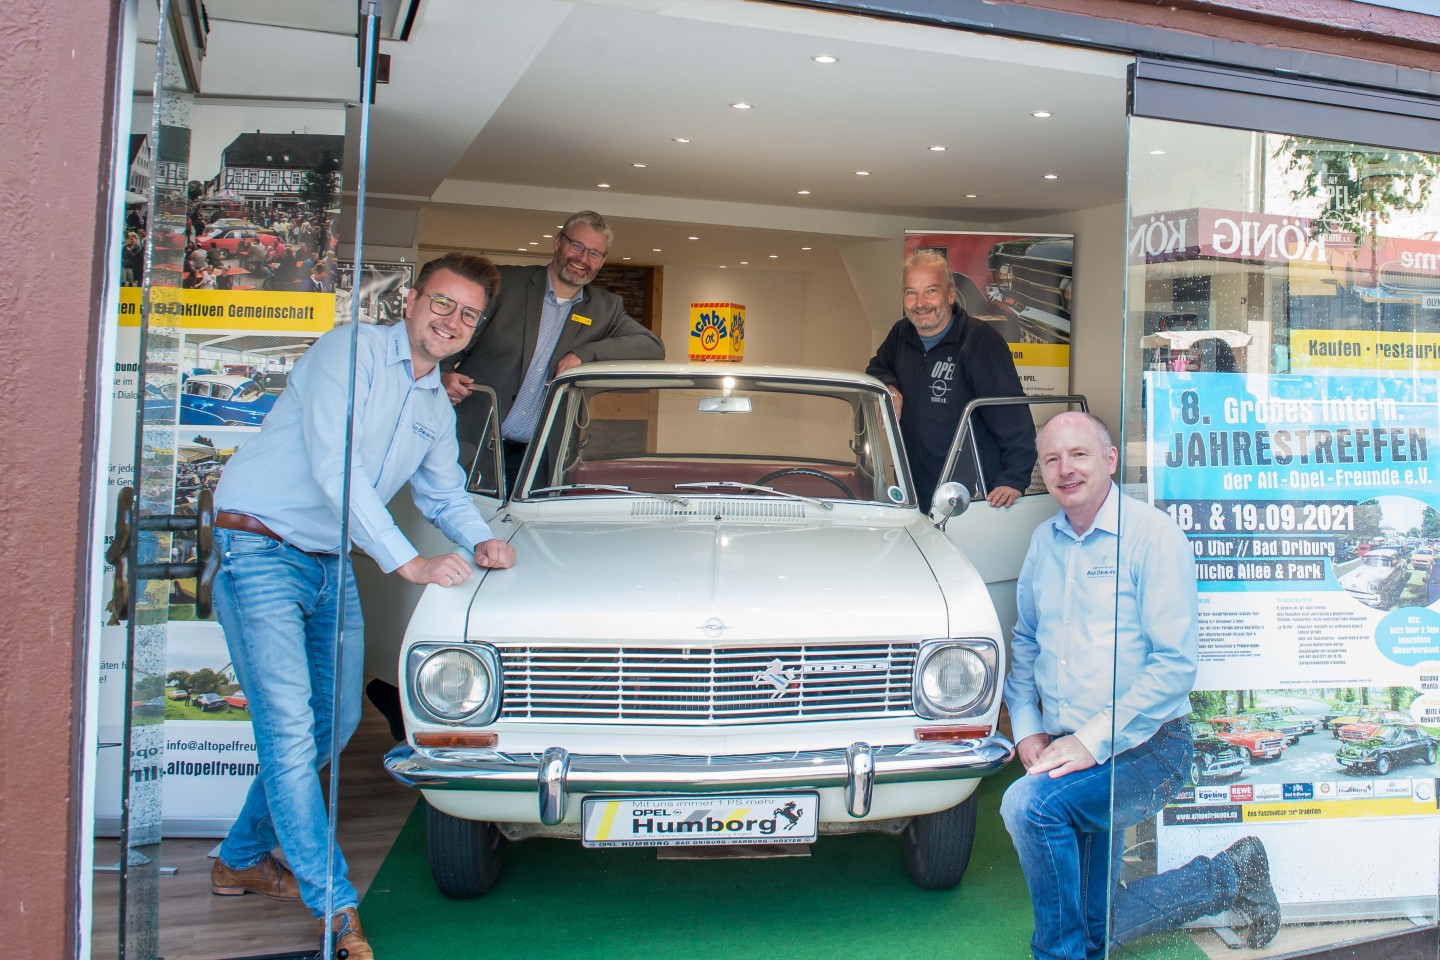 8. großes internationales Jahrestreffen der Alt-Opel-Freunde in Bad Driburg am 18. & 19.09.2021